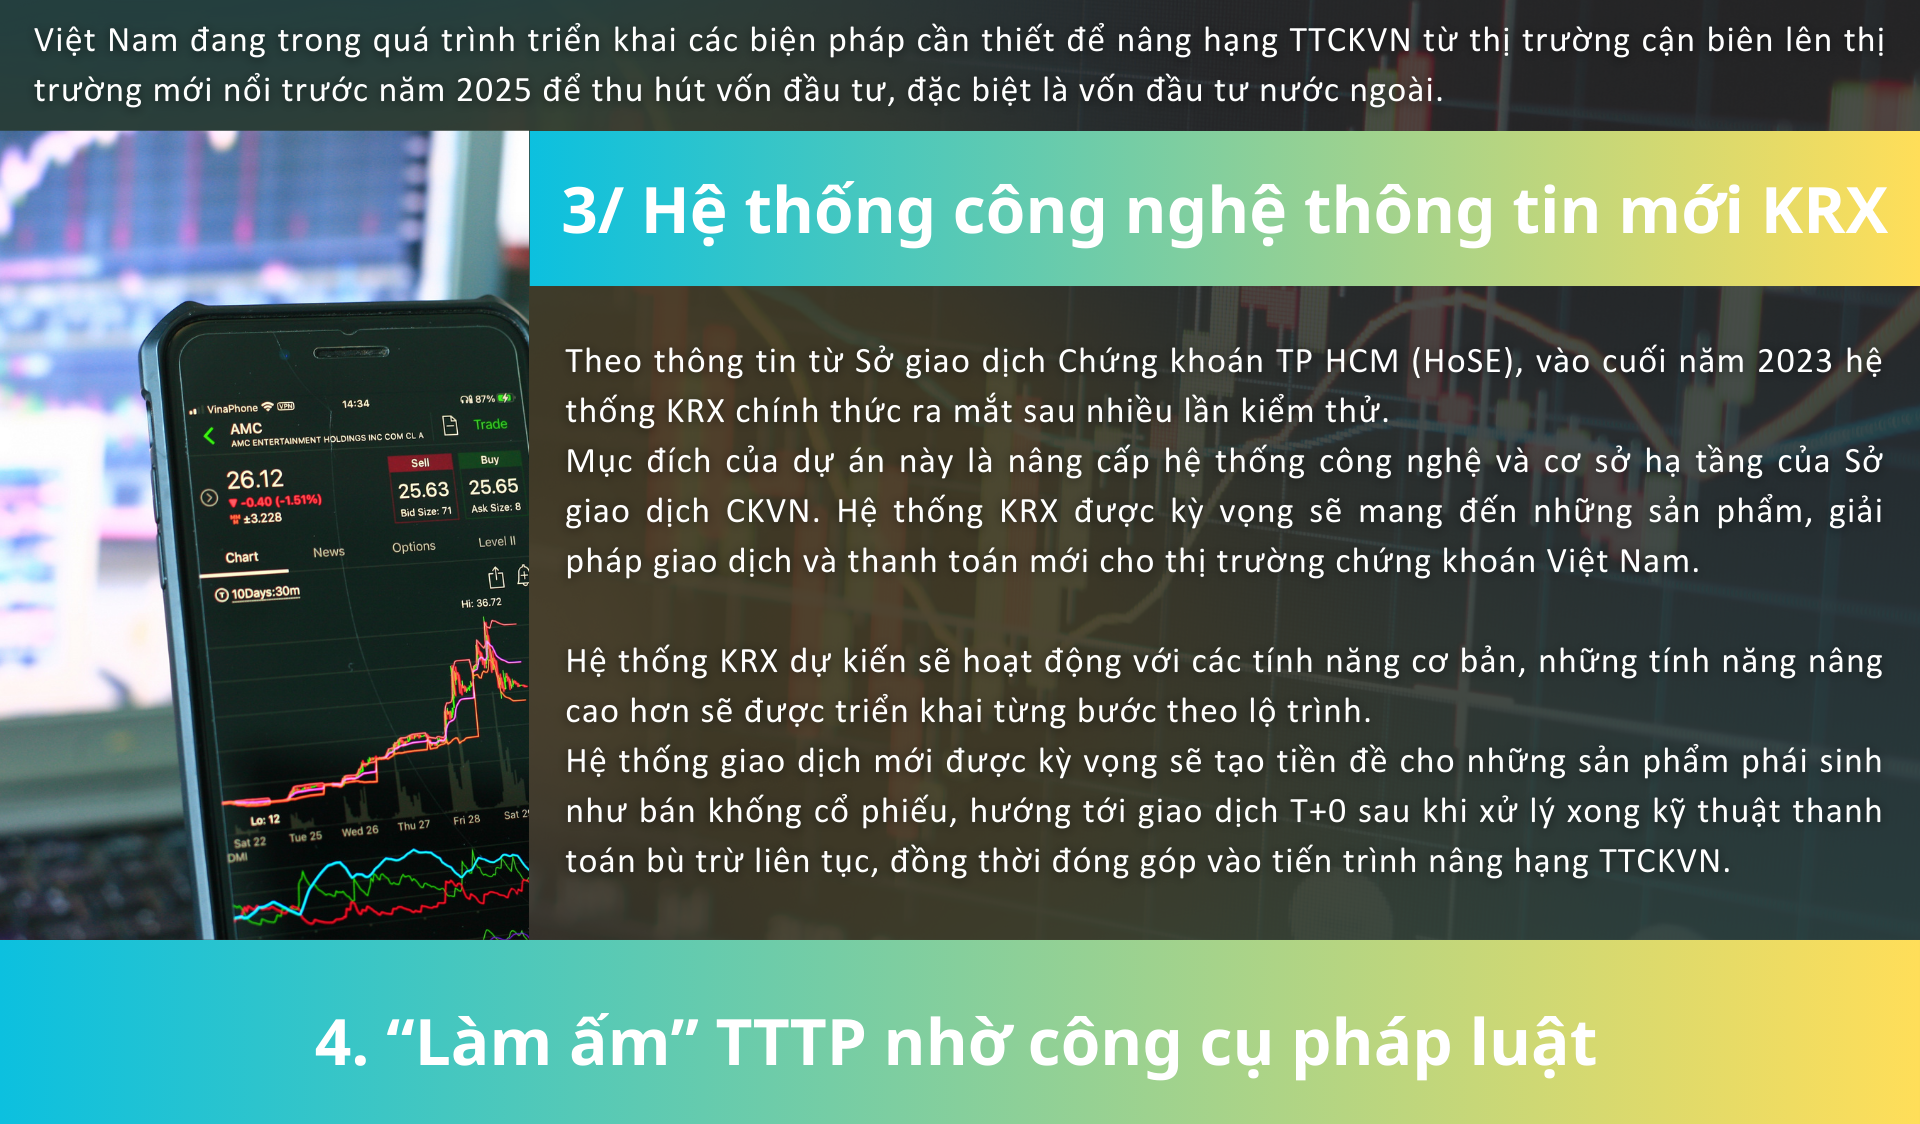 10 sự kiện 'bùng nổ' thị trường chứng khoán Việt Nam năm 2023